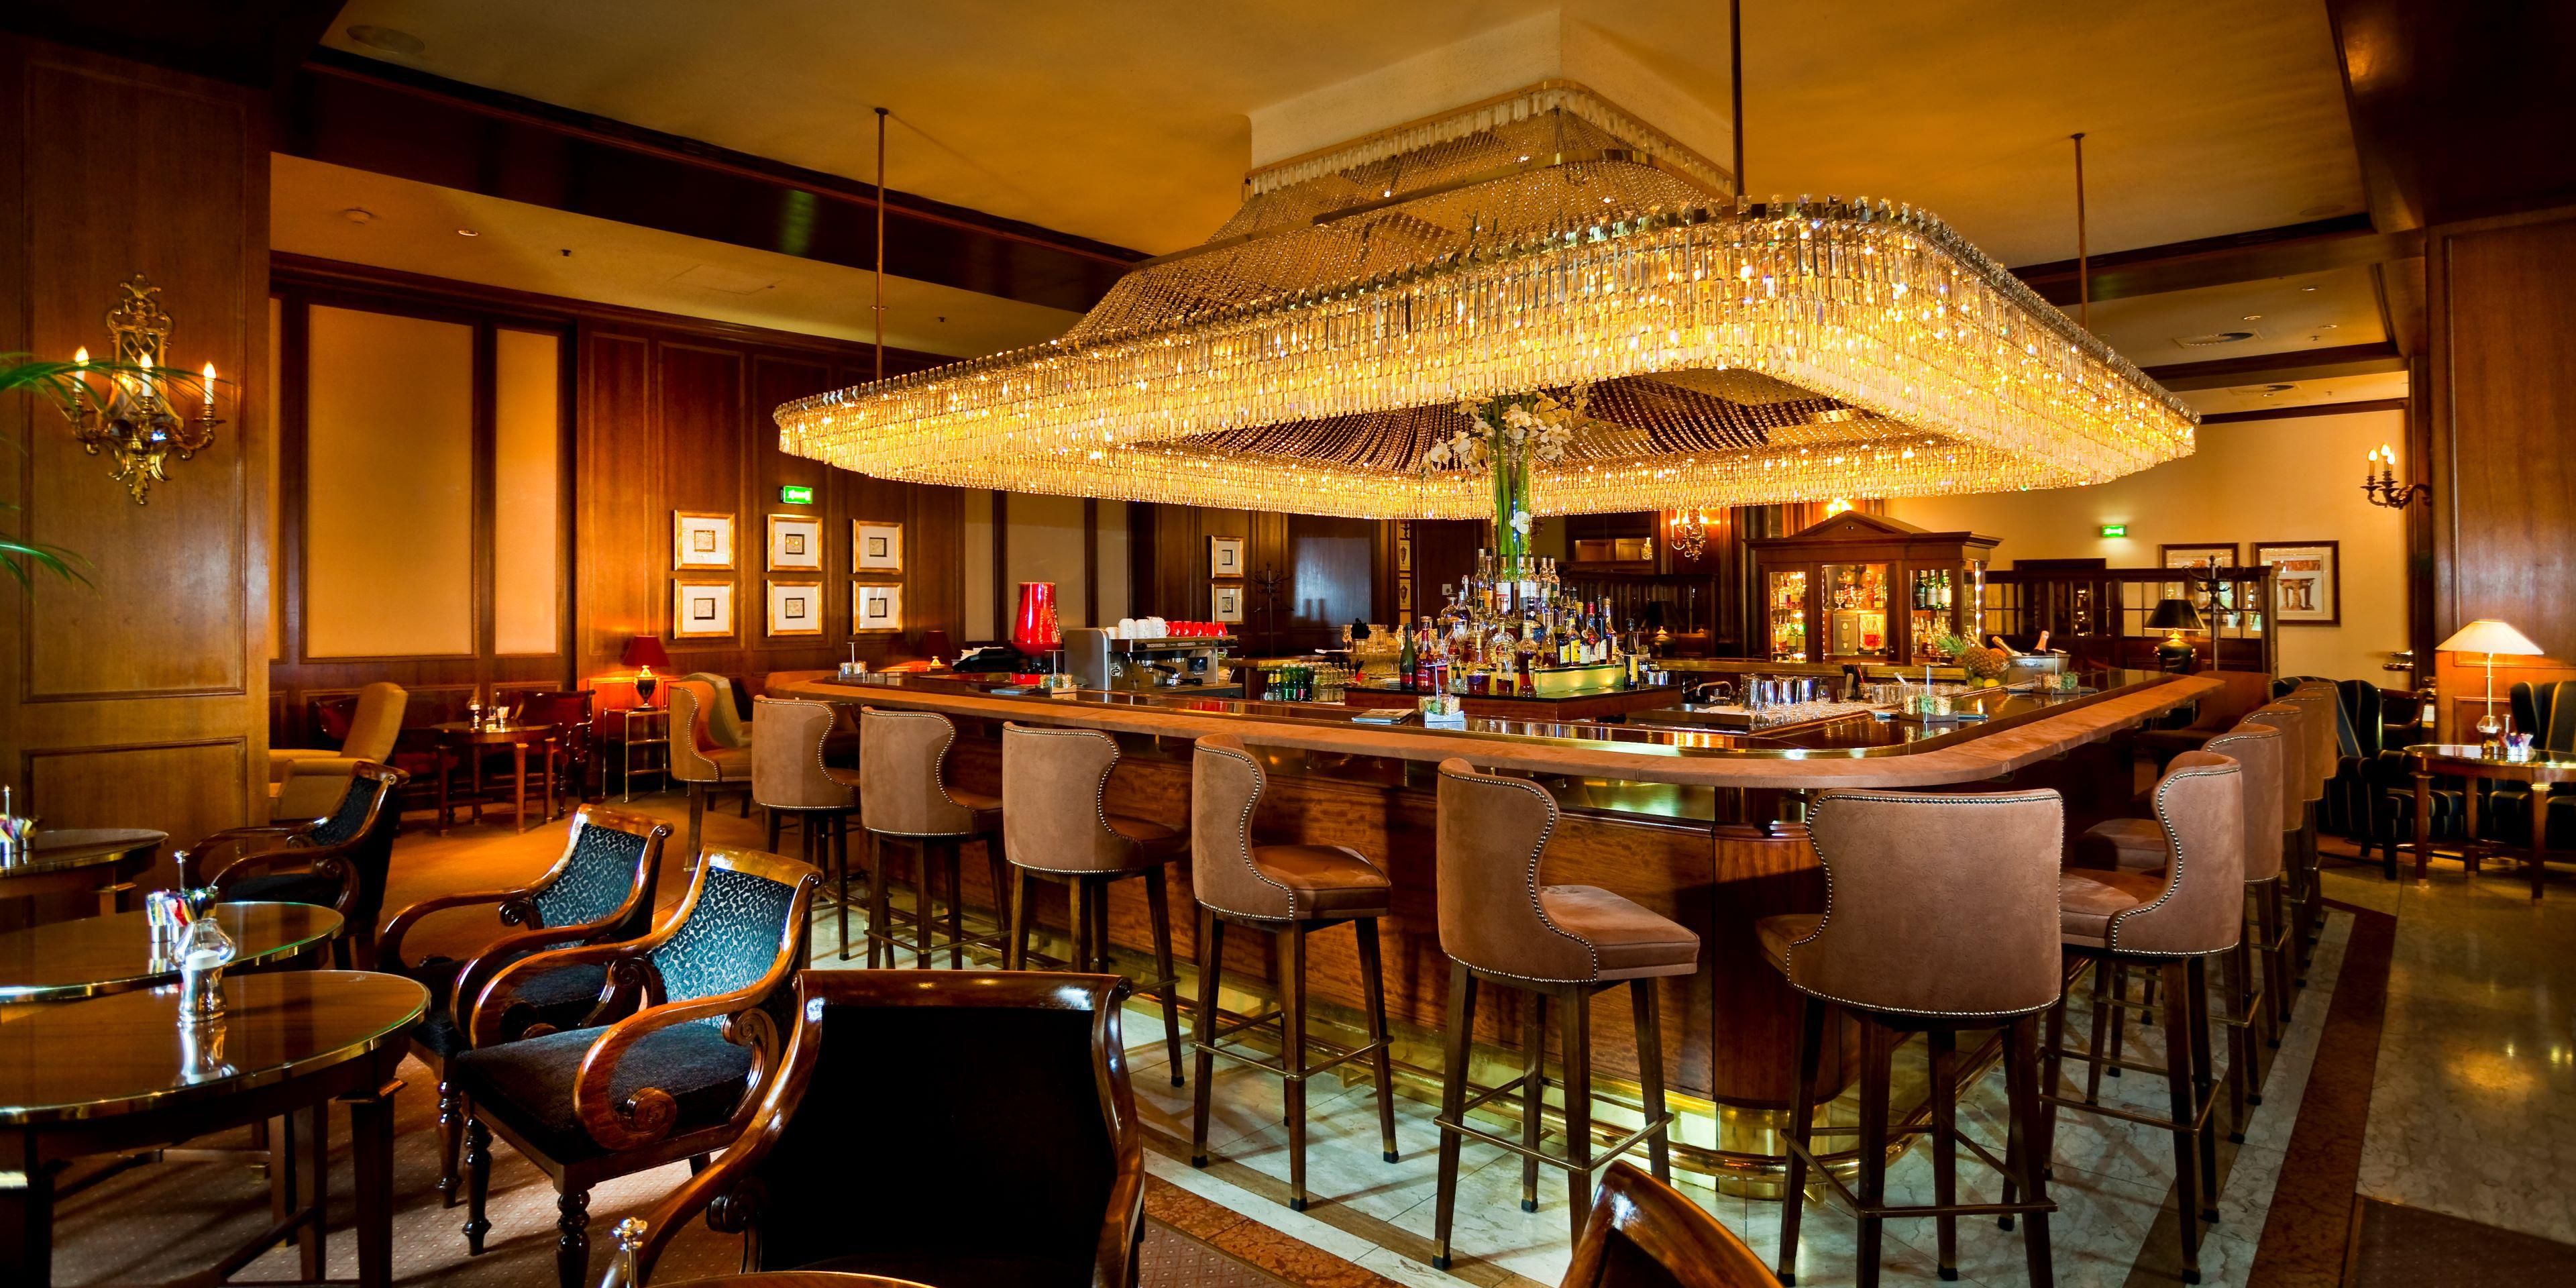 Die legendäre Intermezzo Bar mit ihrem opulenten Kristallluster, erstklassigen Drinks und Barfood ist der ideale Ort, um Ihren Tag stilvoll ausklingen zu lassen.